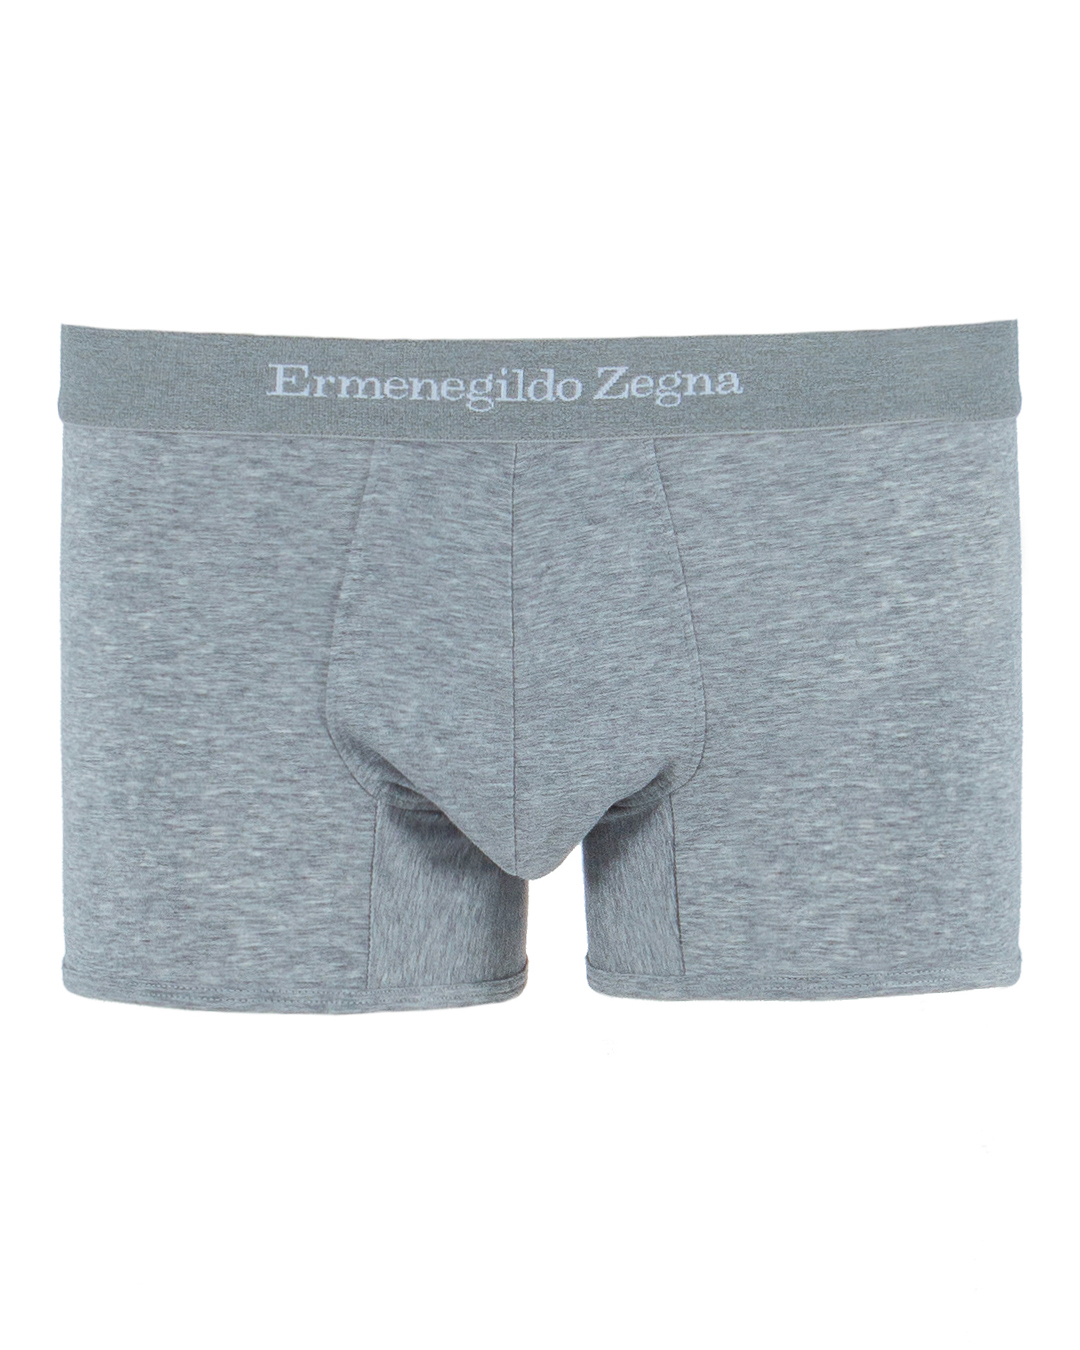 Ermenegildo Zegna с брендированной линией пояса  артикул  марки Ermenegildo Zegna купить за 5900 руб.